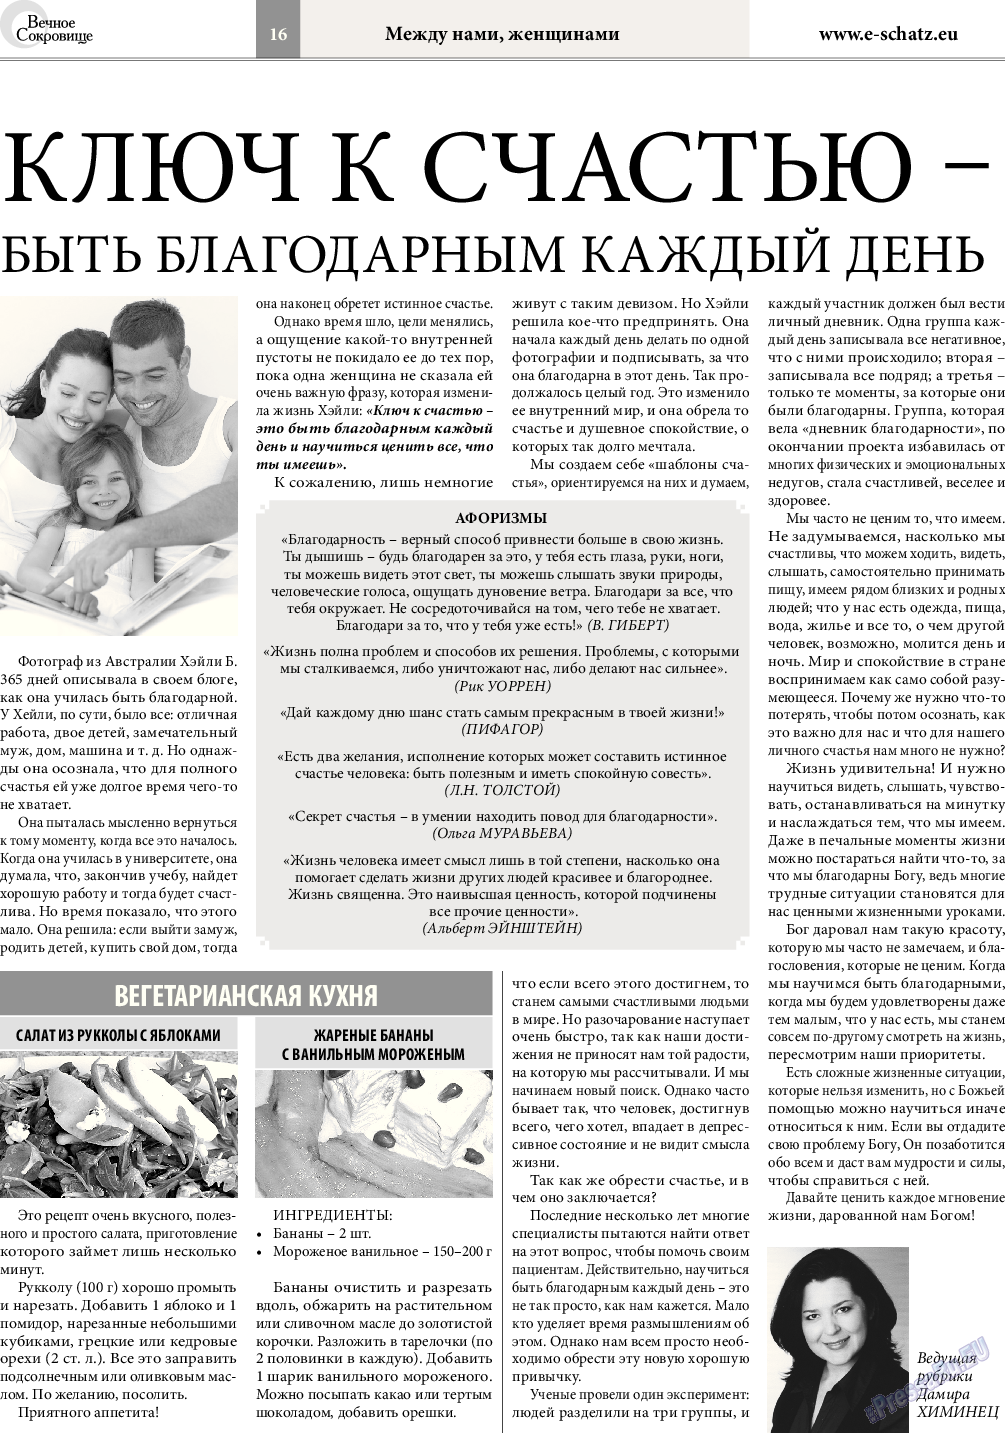 Вечное сокровище, газета. 2015 №4 стр.16